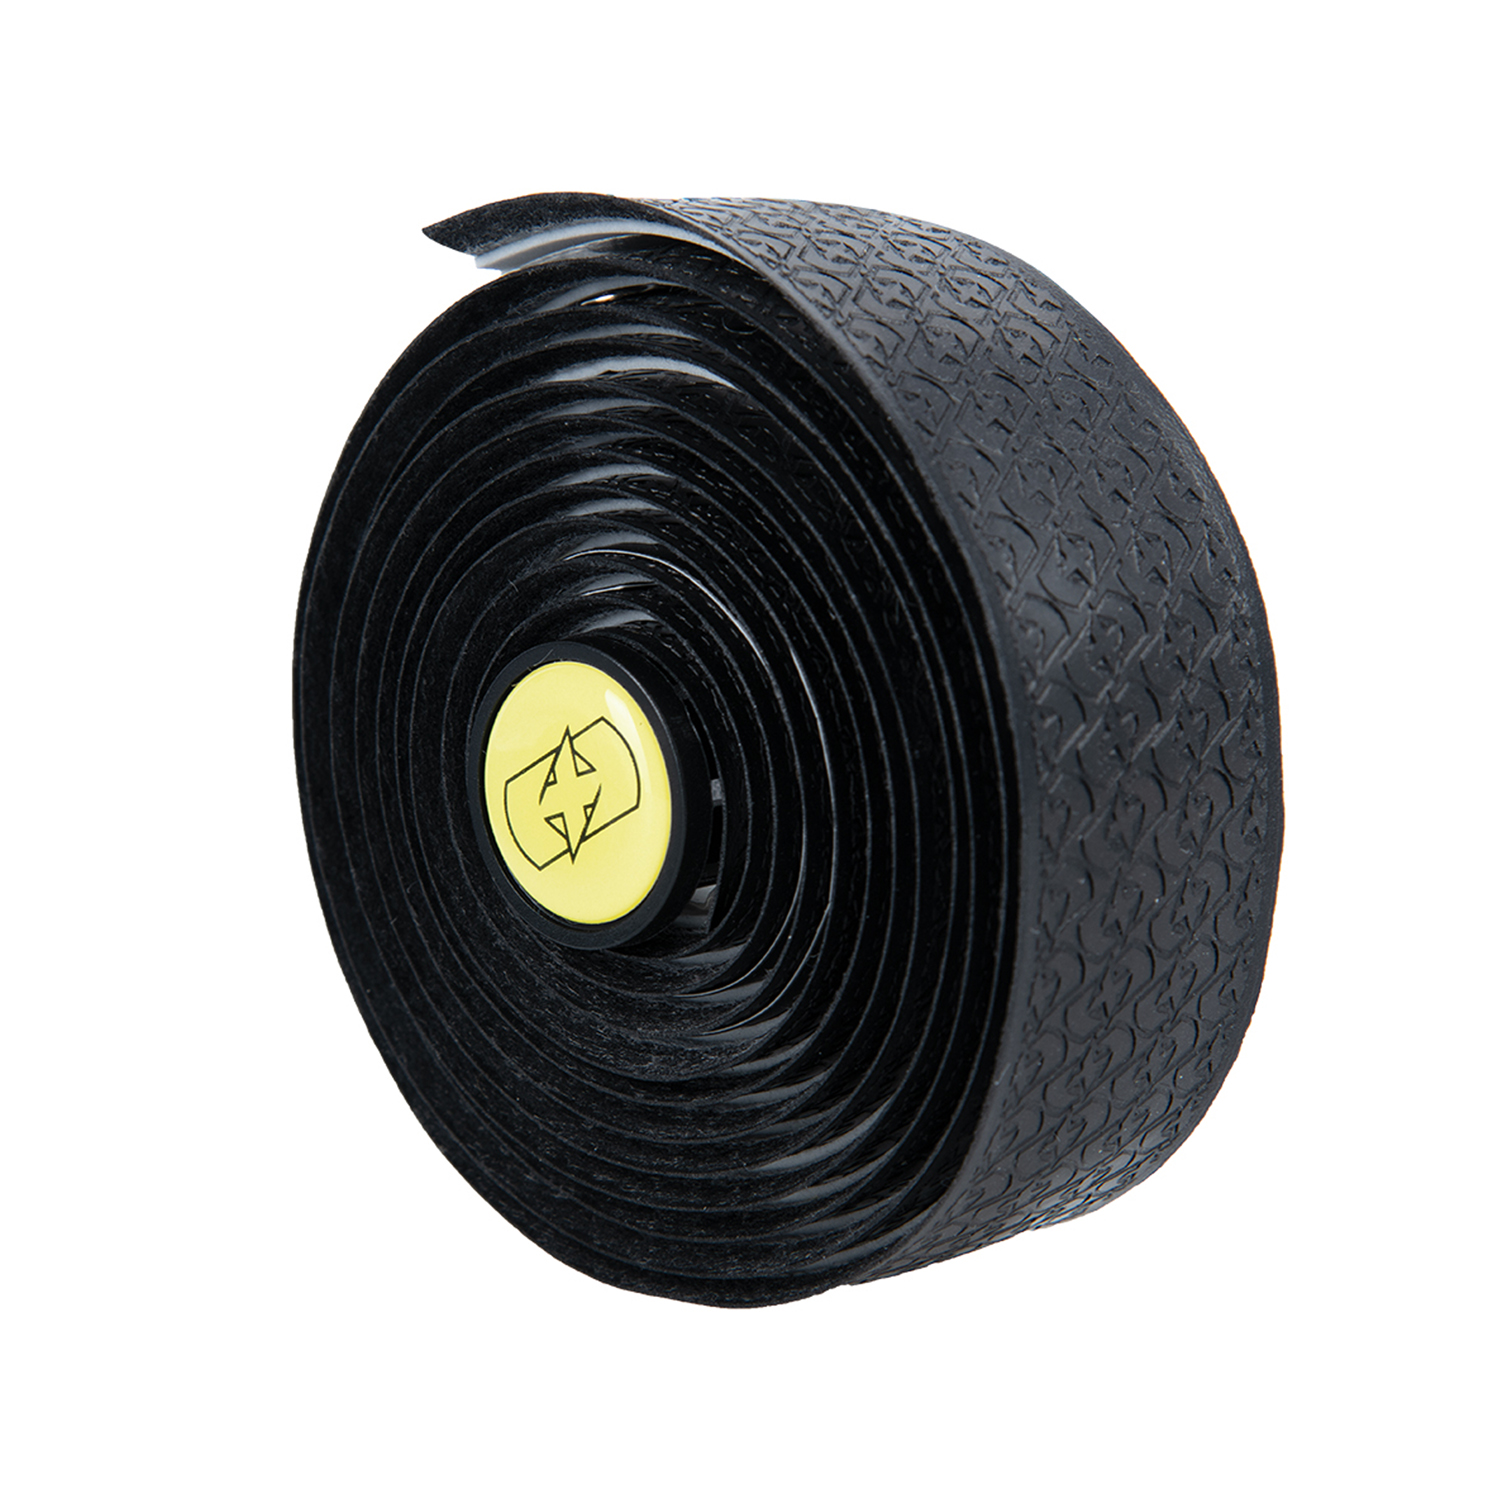 Обмотка руля Oxford Performance Handlebar Tape 3mm Black